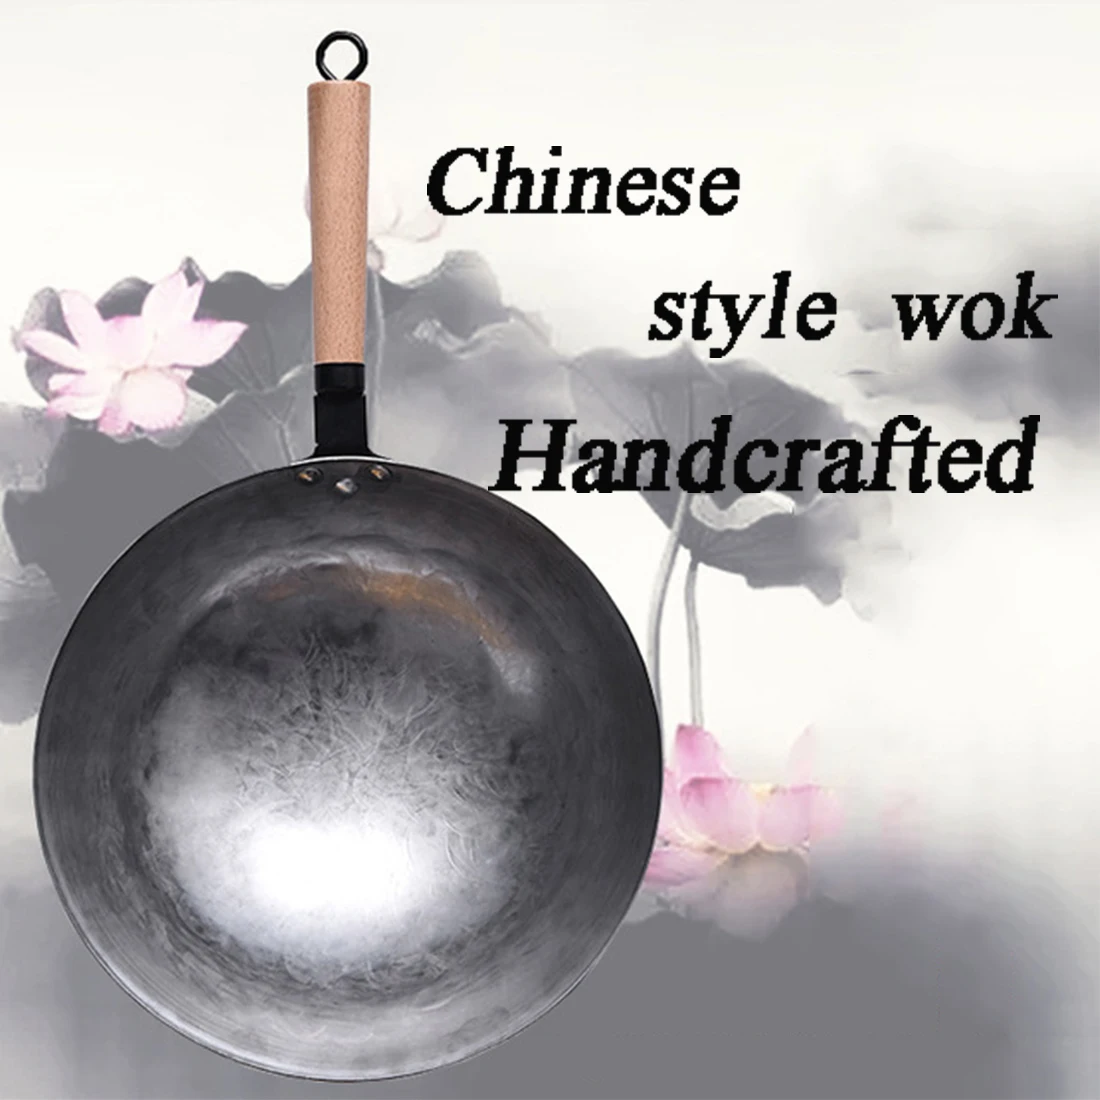 Китайский Железный вок традиционный ручной работы Железный вок с антипригарным покрытием газовая плита посуда высокого качества